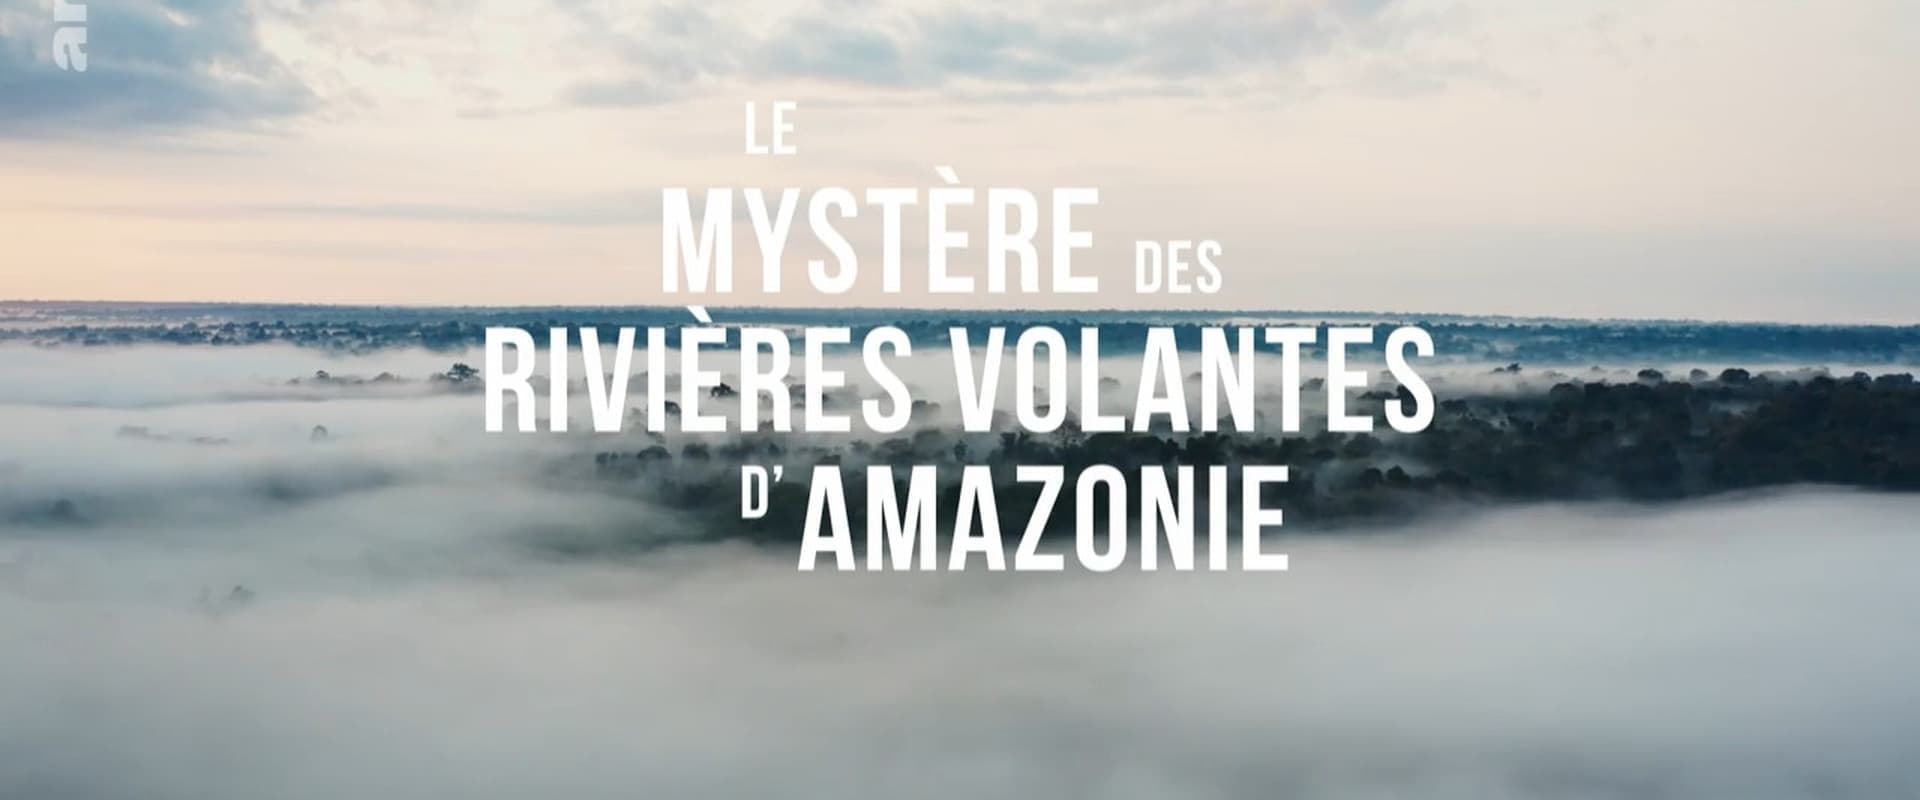 Le Mystère des rivières volantes d'Amazonie